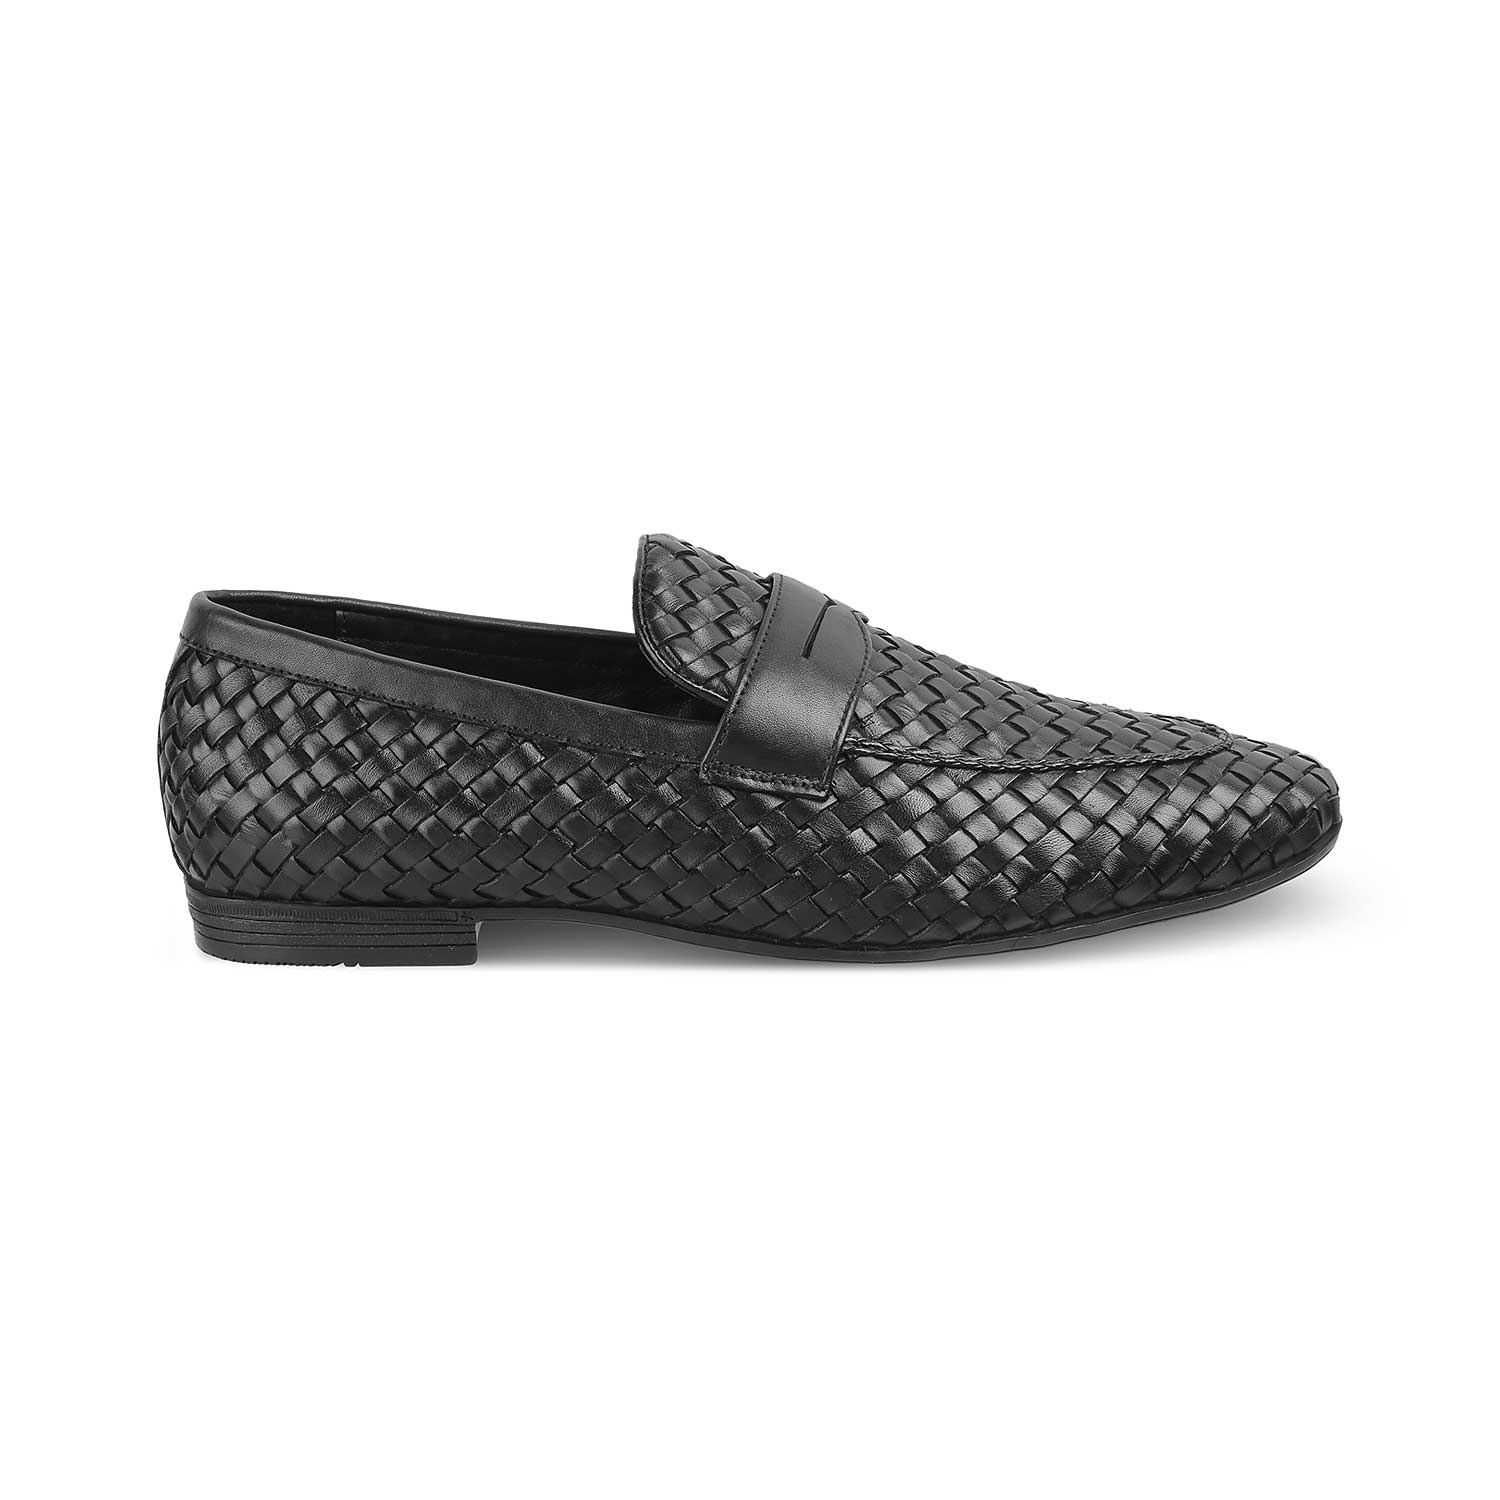 Nokiv Black Men's Leather Loafers Online at Tresmode.com